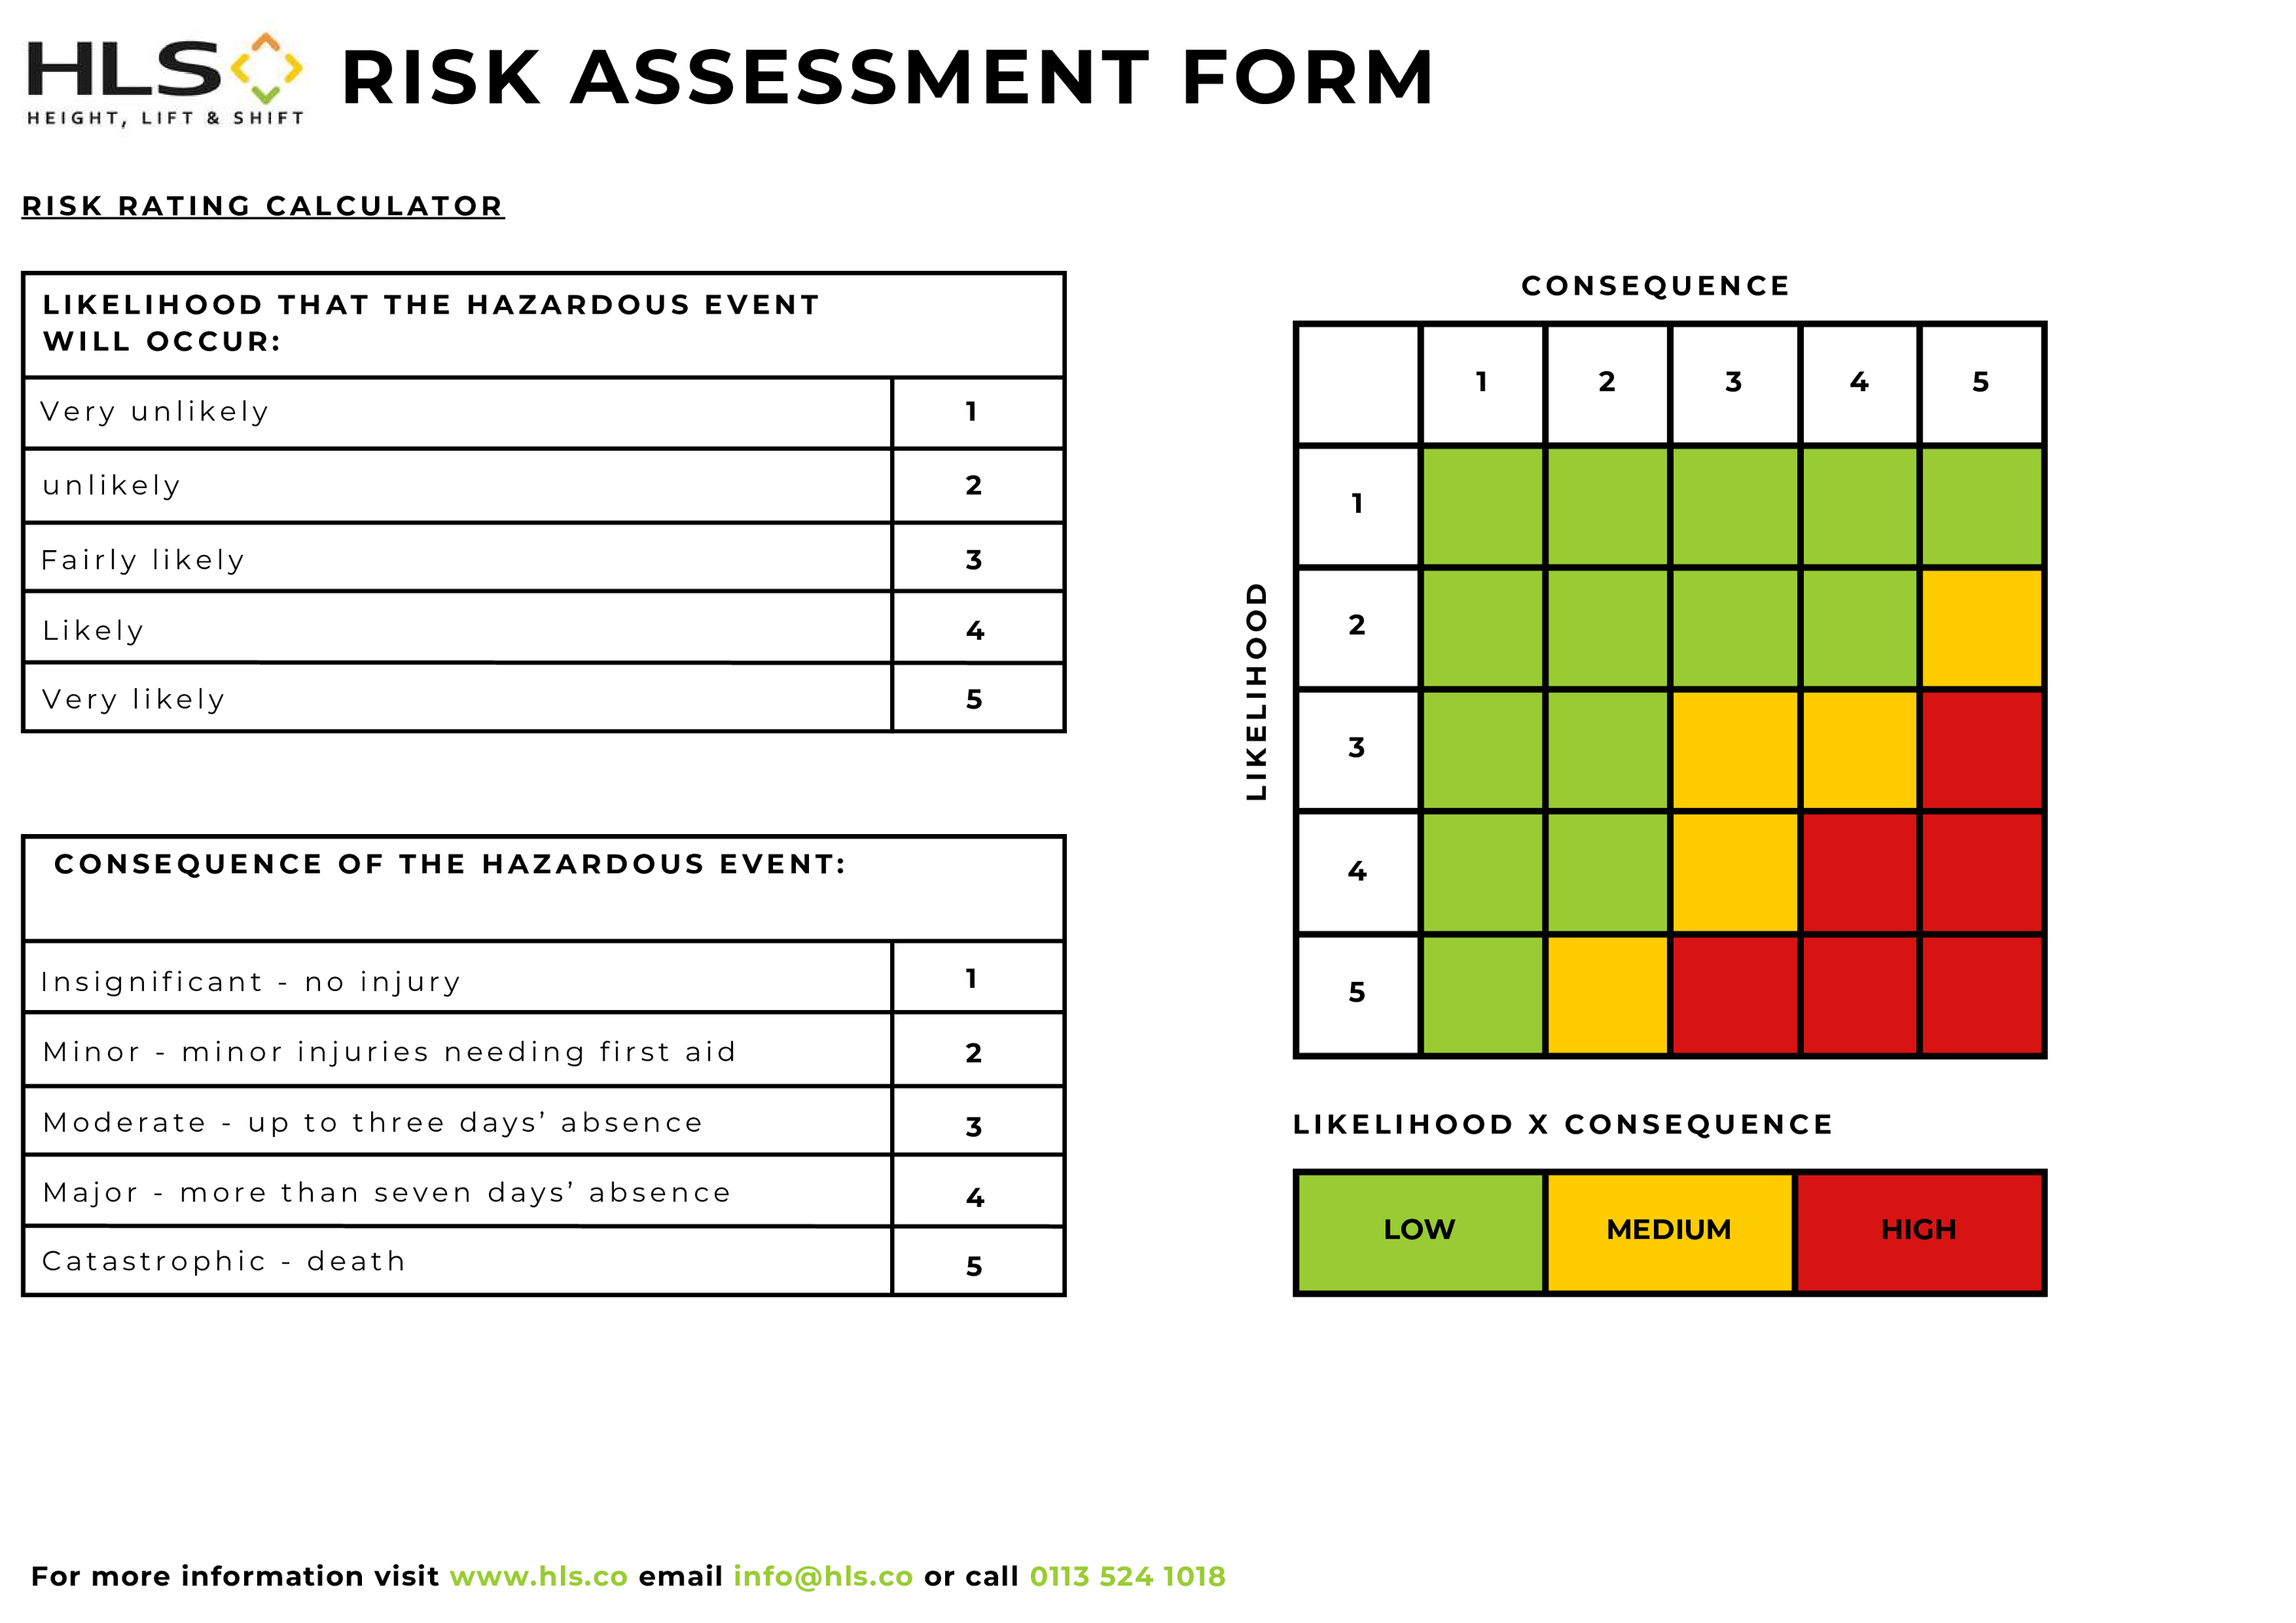 HLS Risk Assessment form page 2